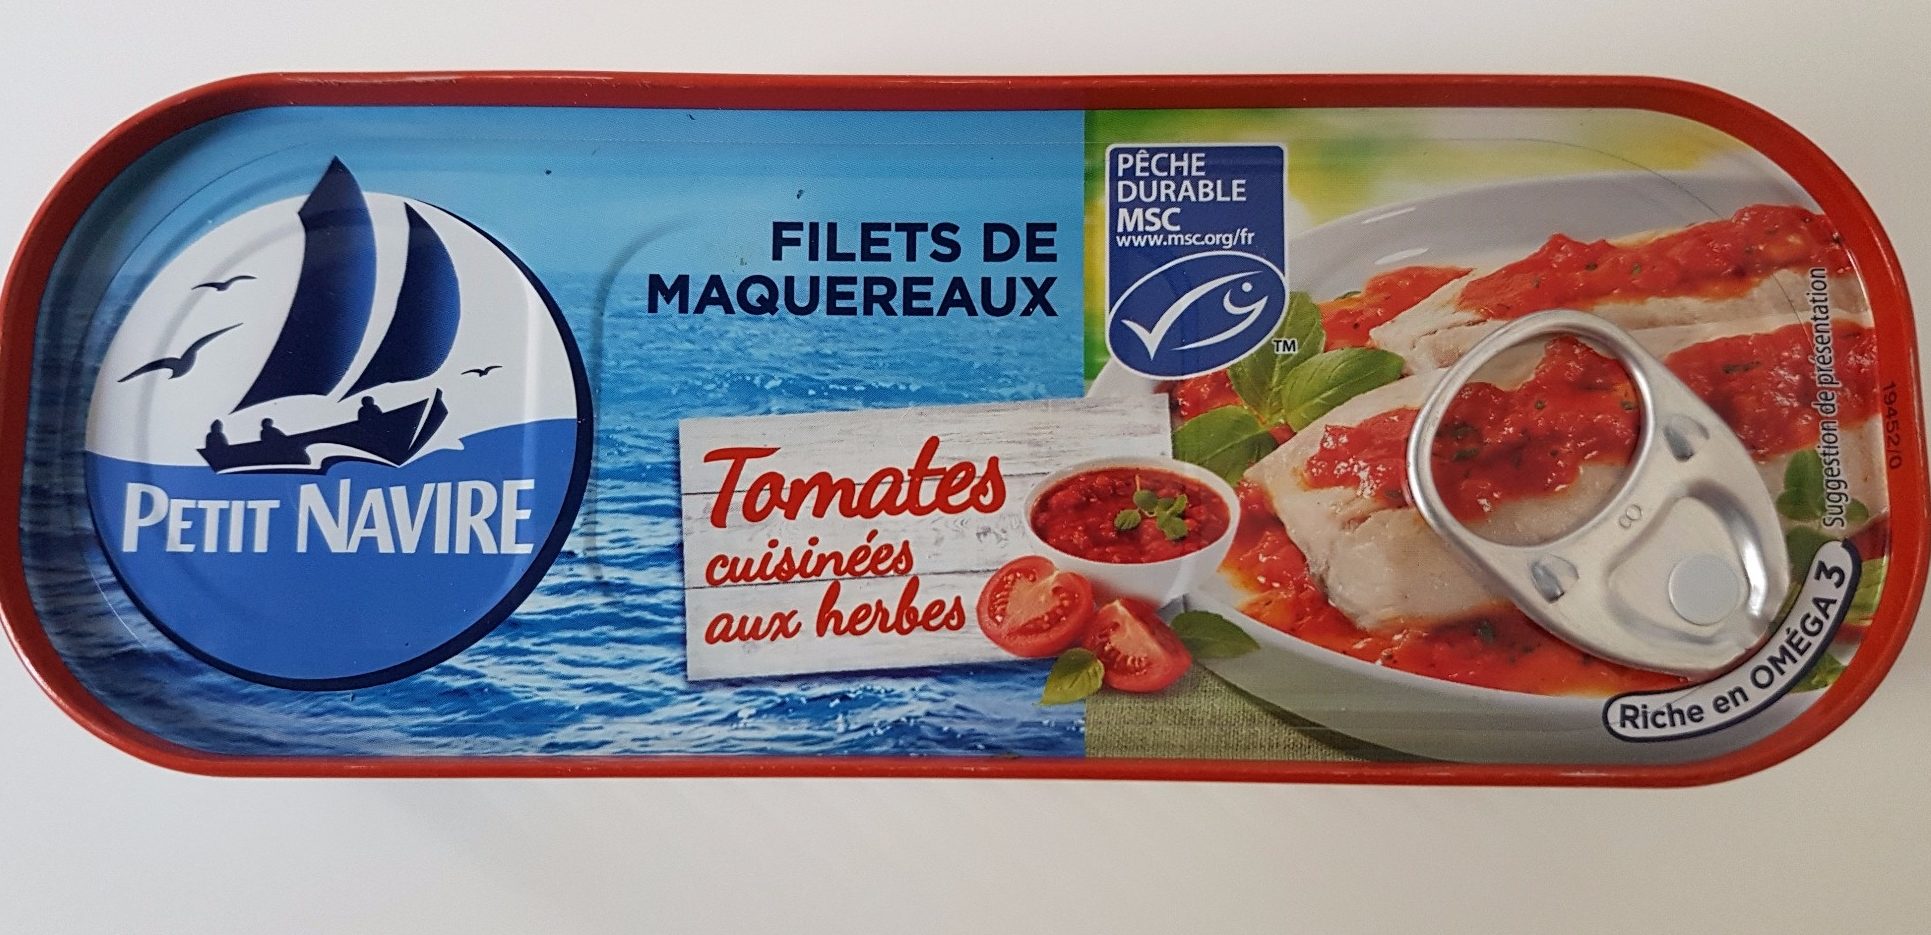 Filet de Maquereaux - Tomates et herbes - Product - fr